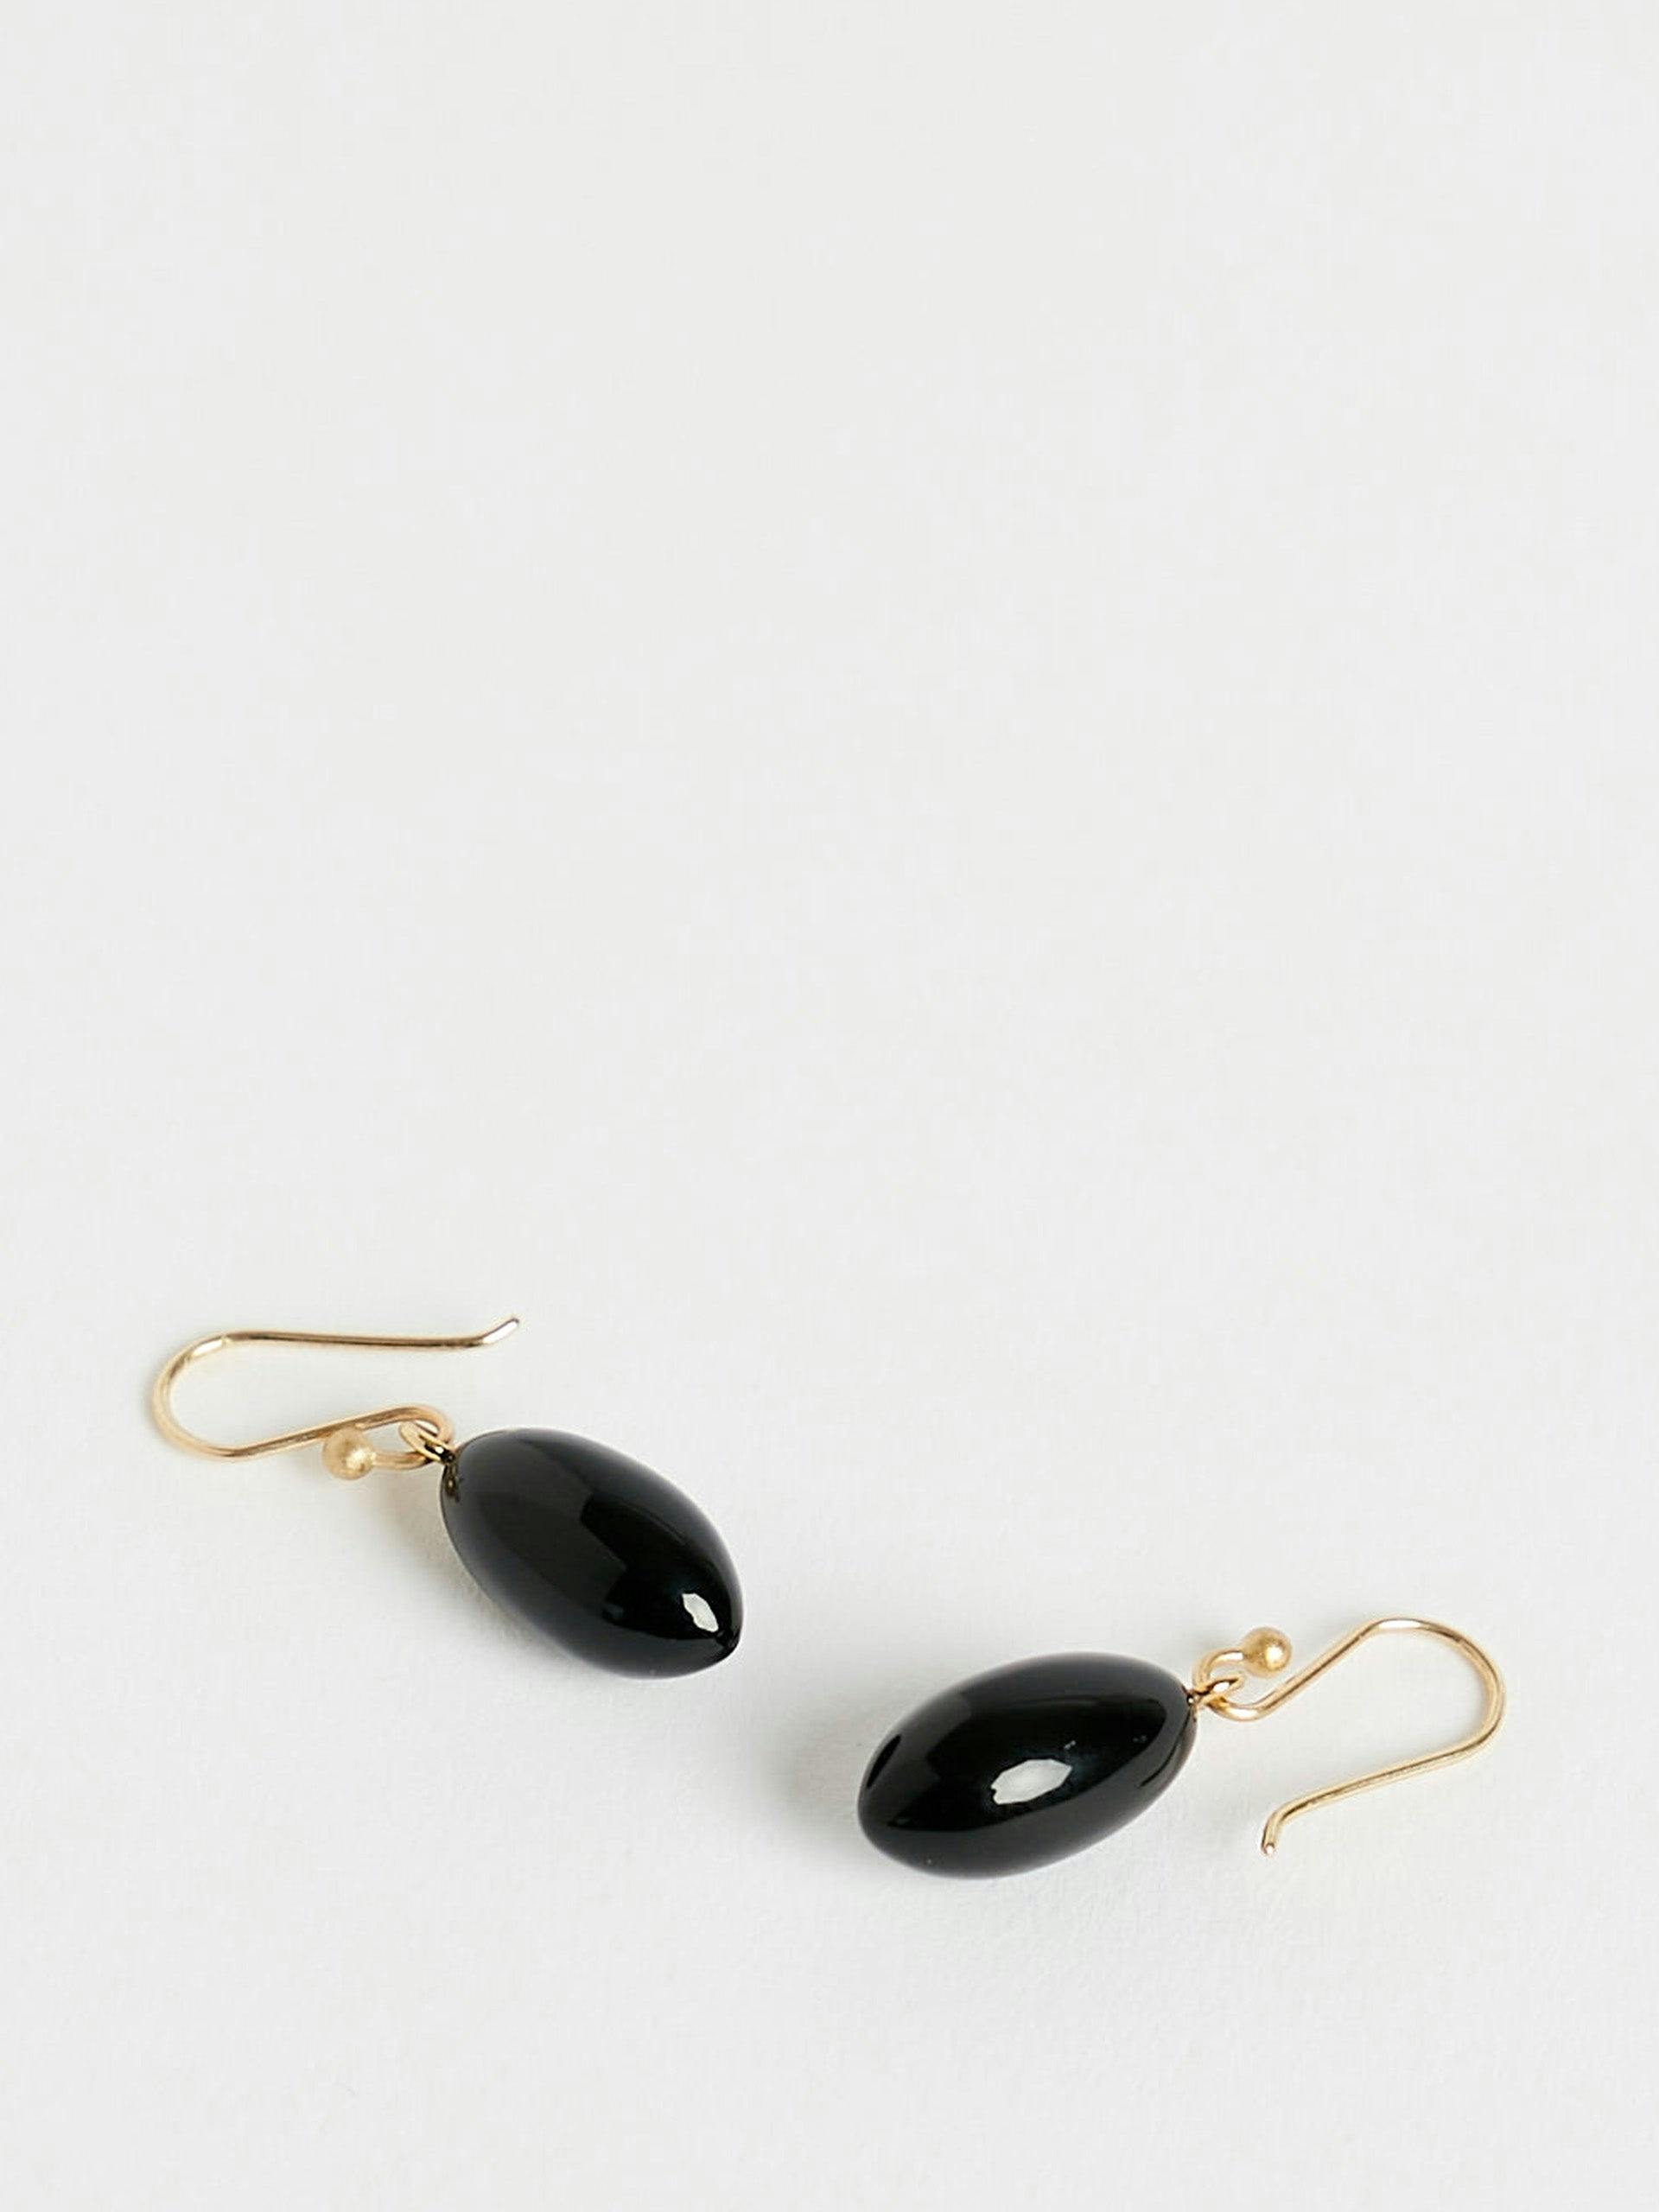 Berry earrings in onyx